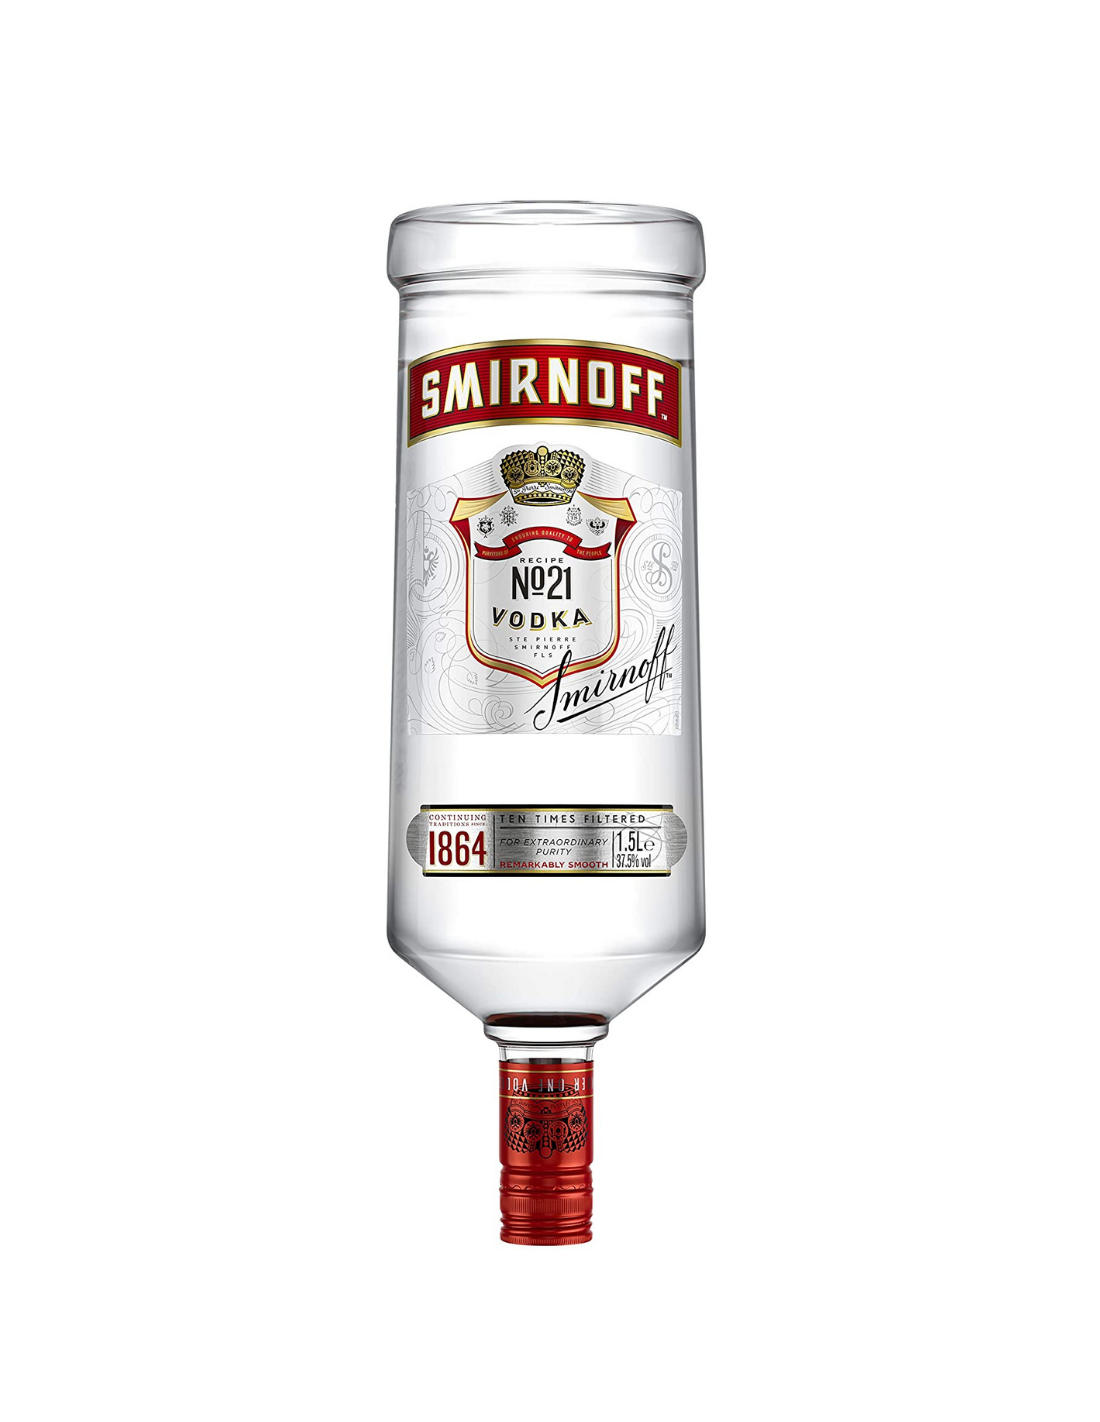 Vodca Smirnoff Red Label 1.5L, 40% alc., Rusia